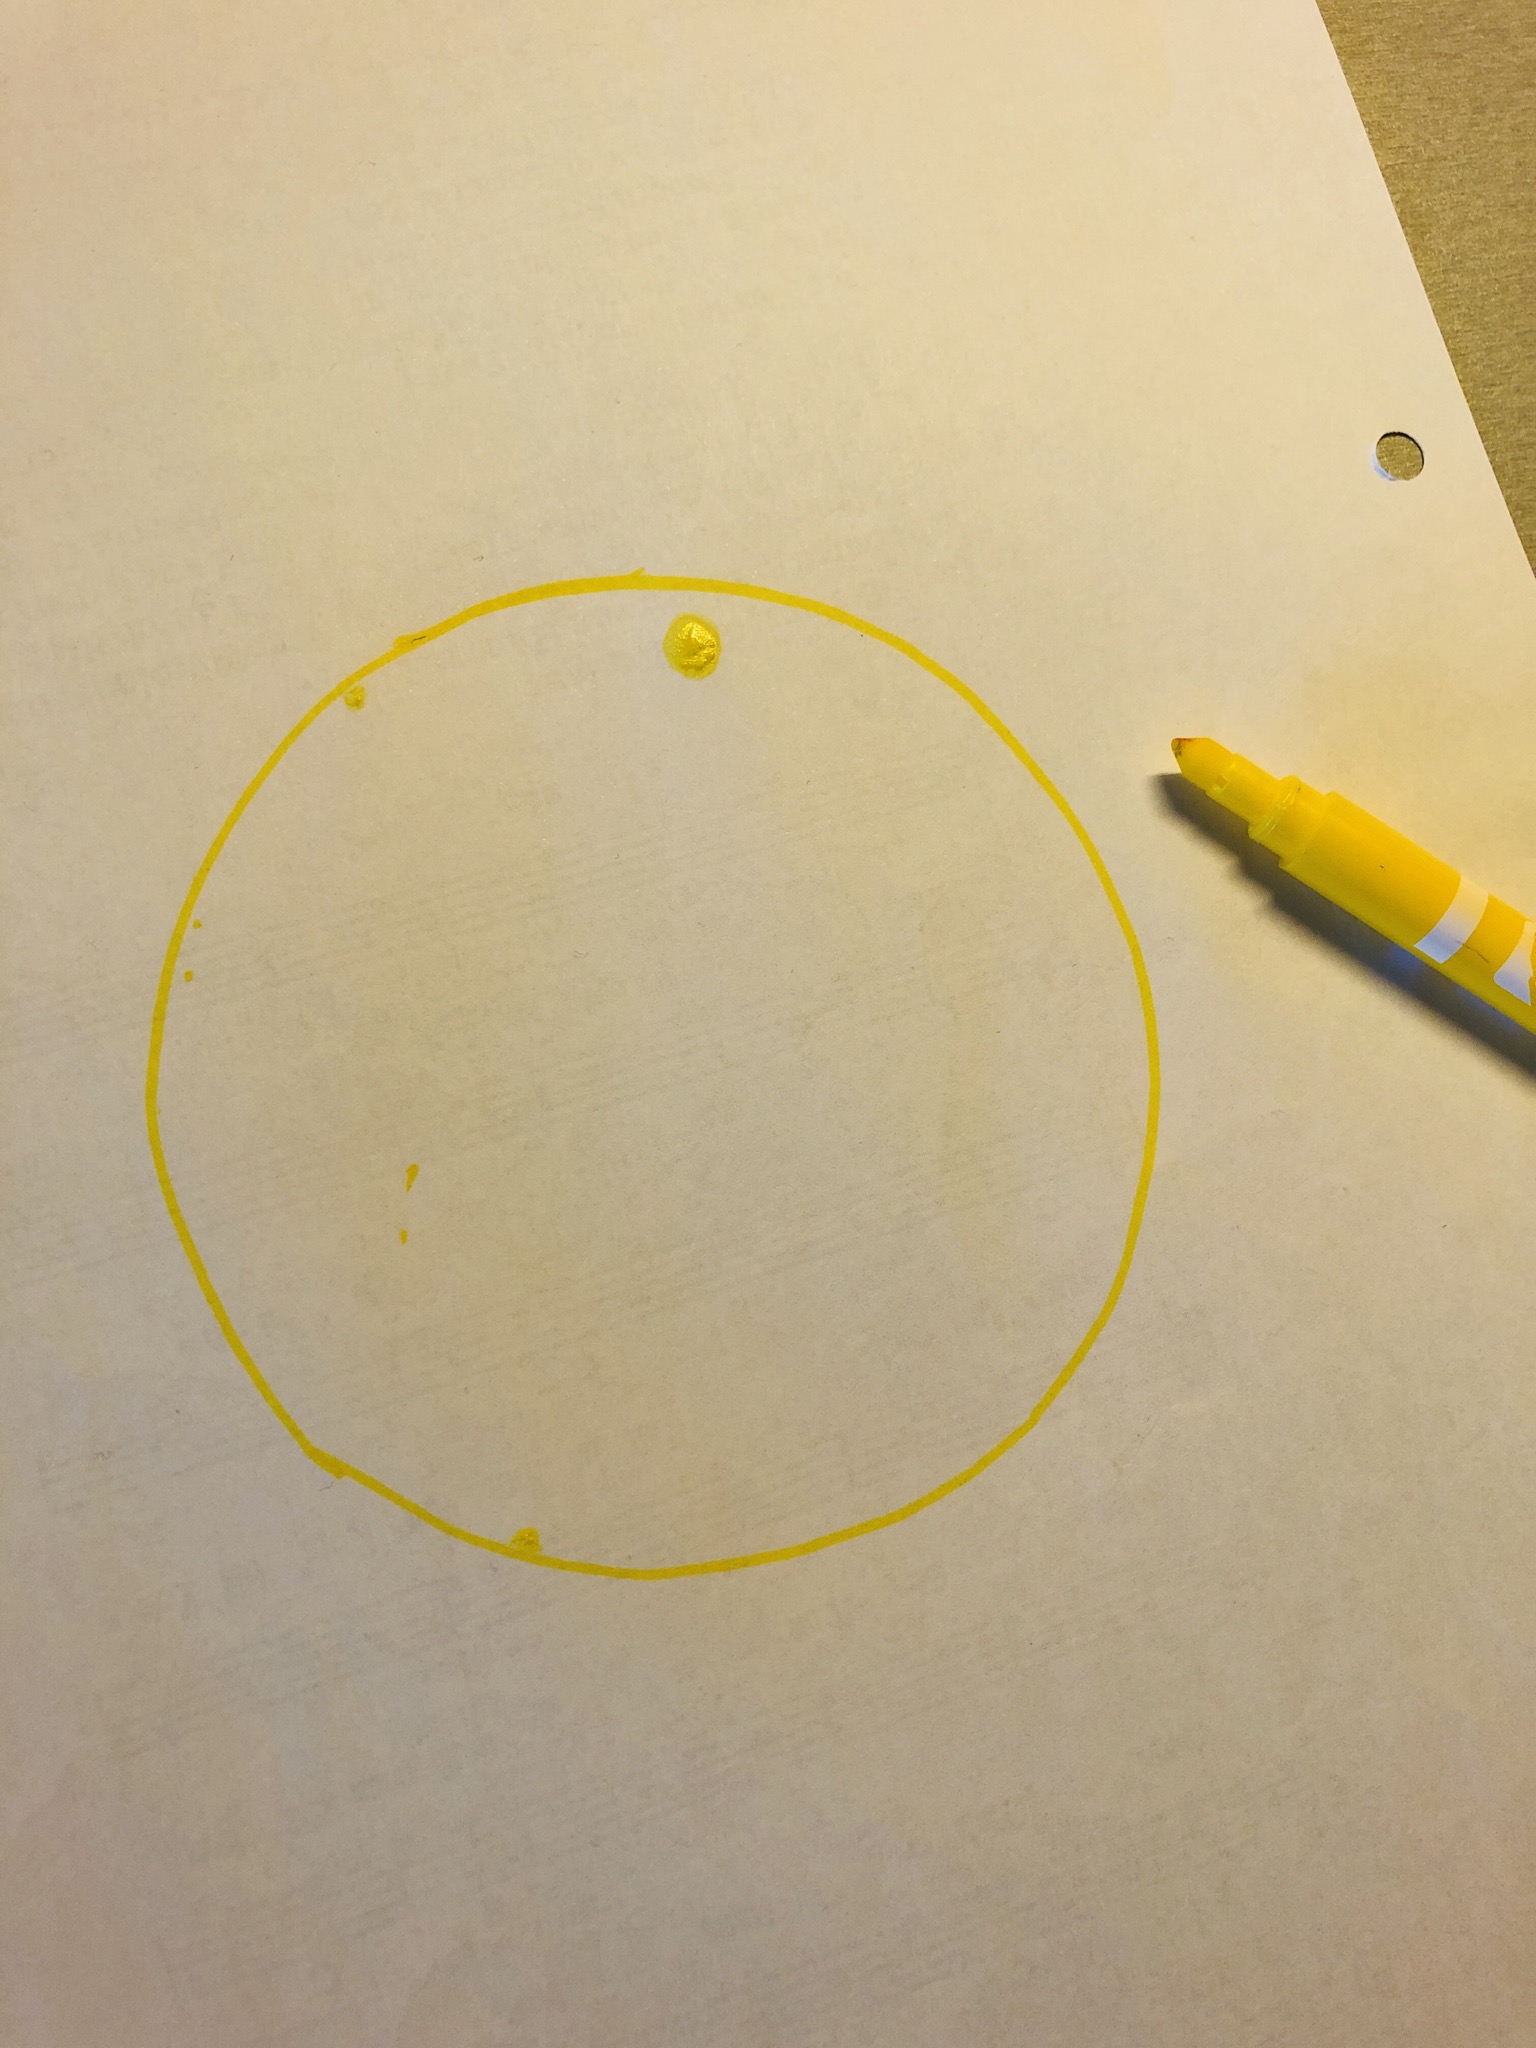 2. Bild zum Schritt 4 für das Bastel- und DIY-Abenteuer für Kinder: 'Übertragt euren Kreis mit einem gelben Stift auf das weiße...'